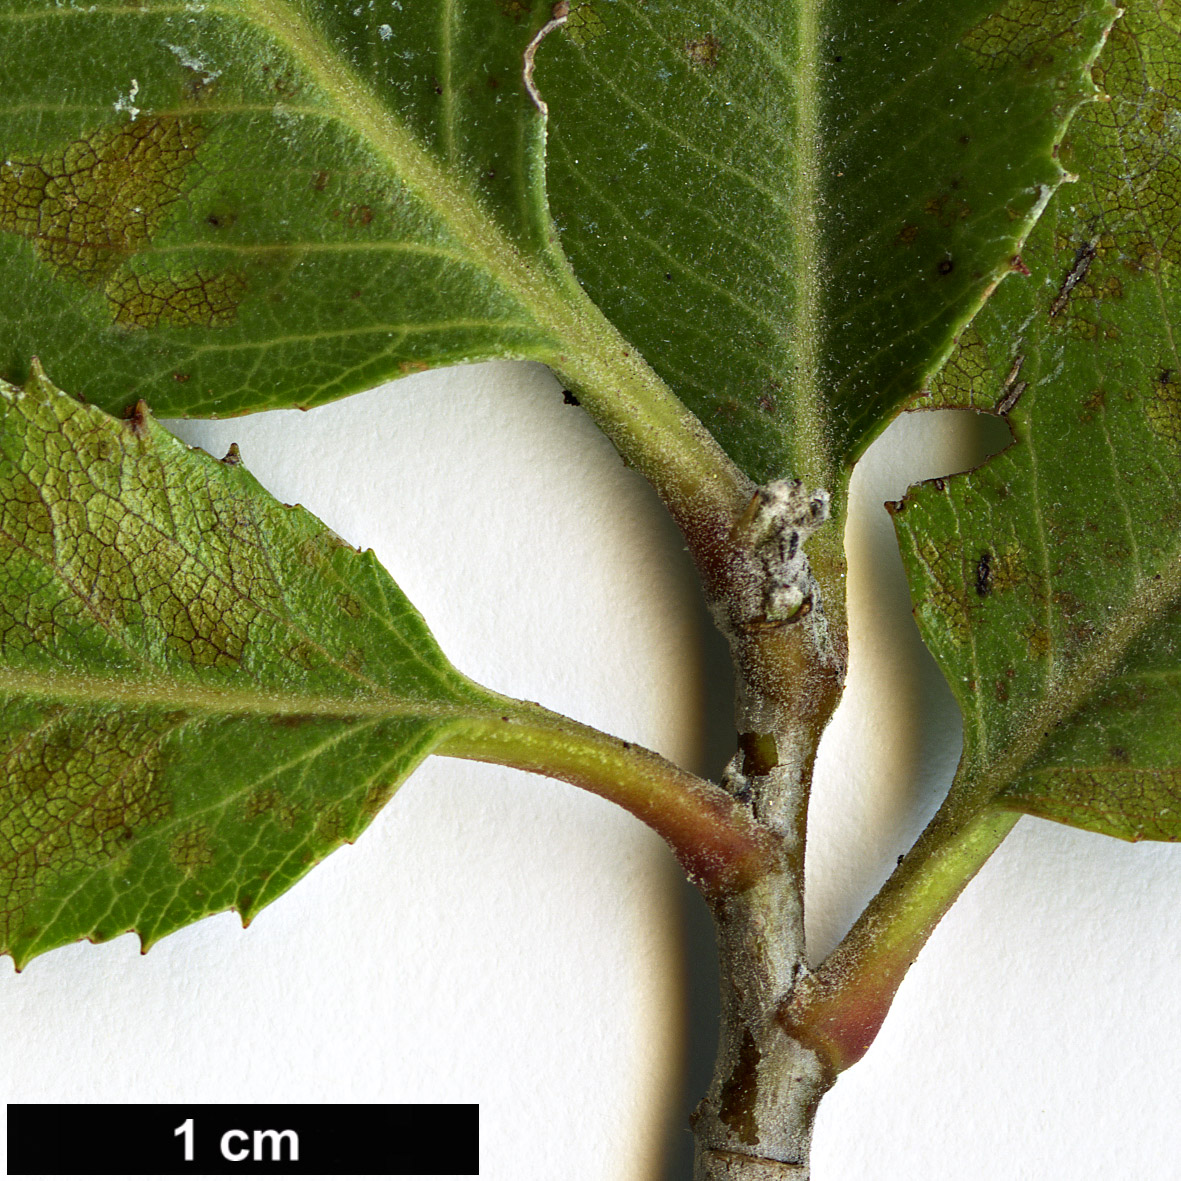 High resolution image: Family: Rosaceae - Genus: Vauquelinia - Taxon: californica